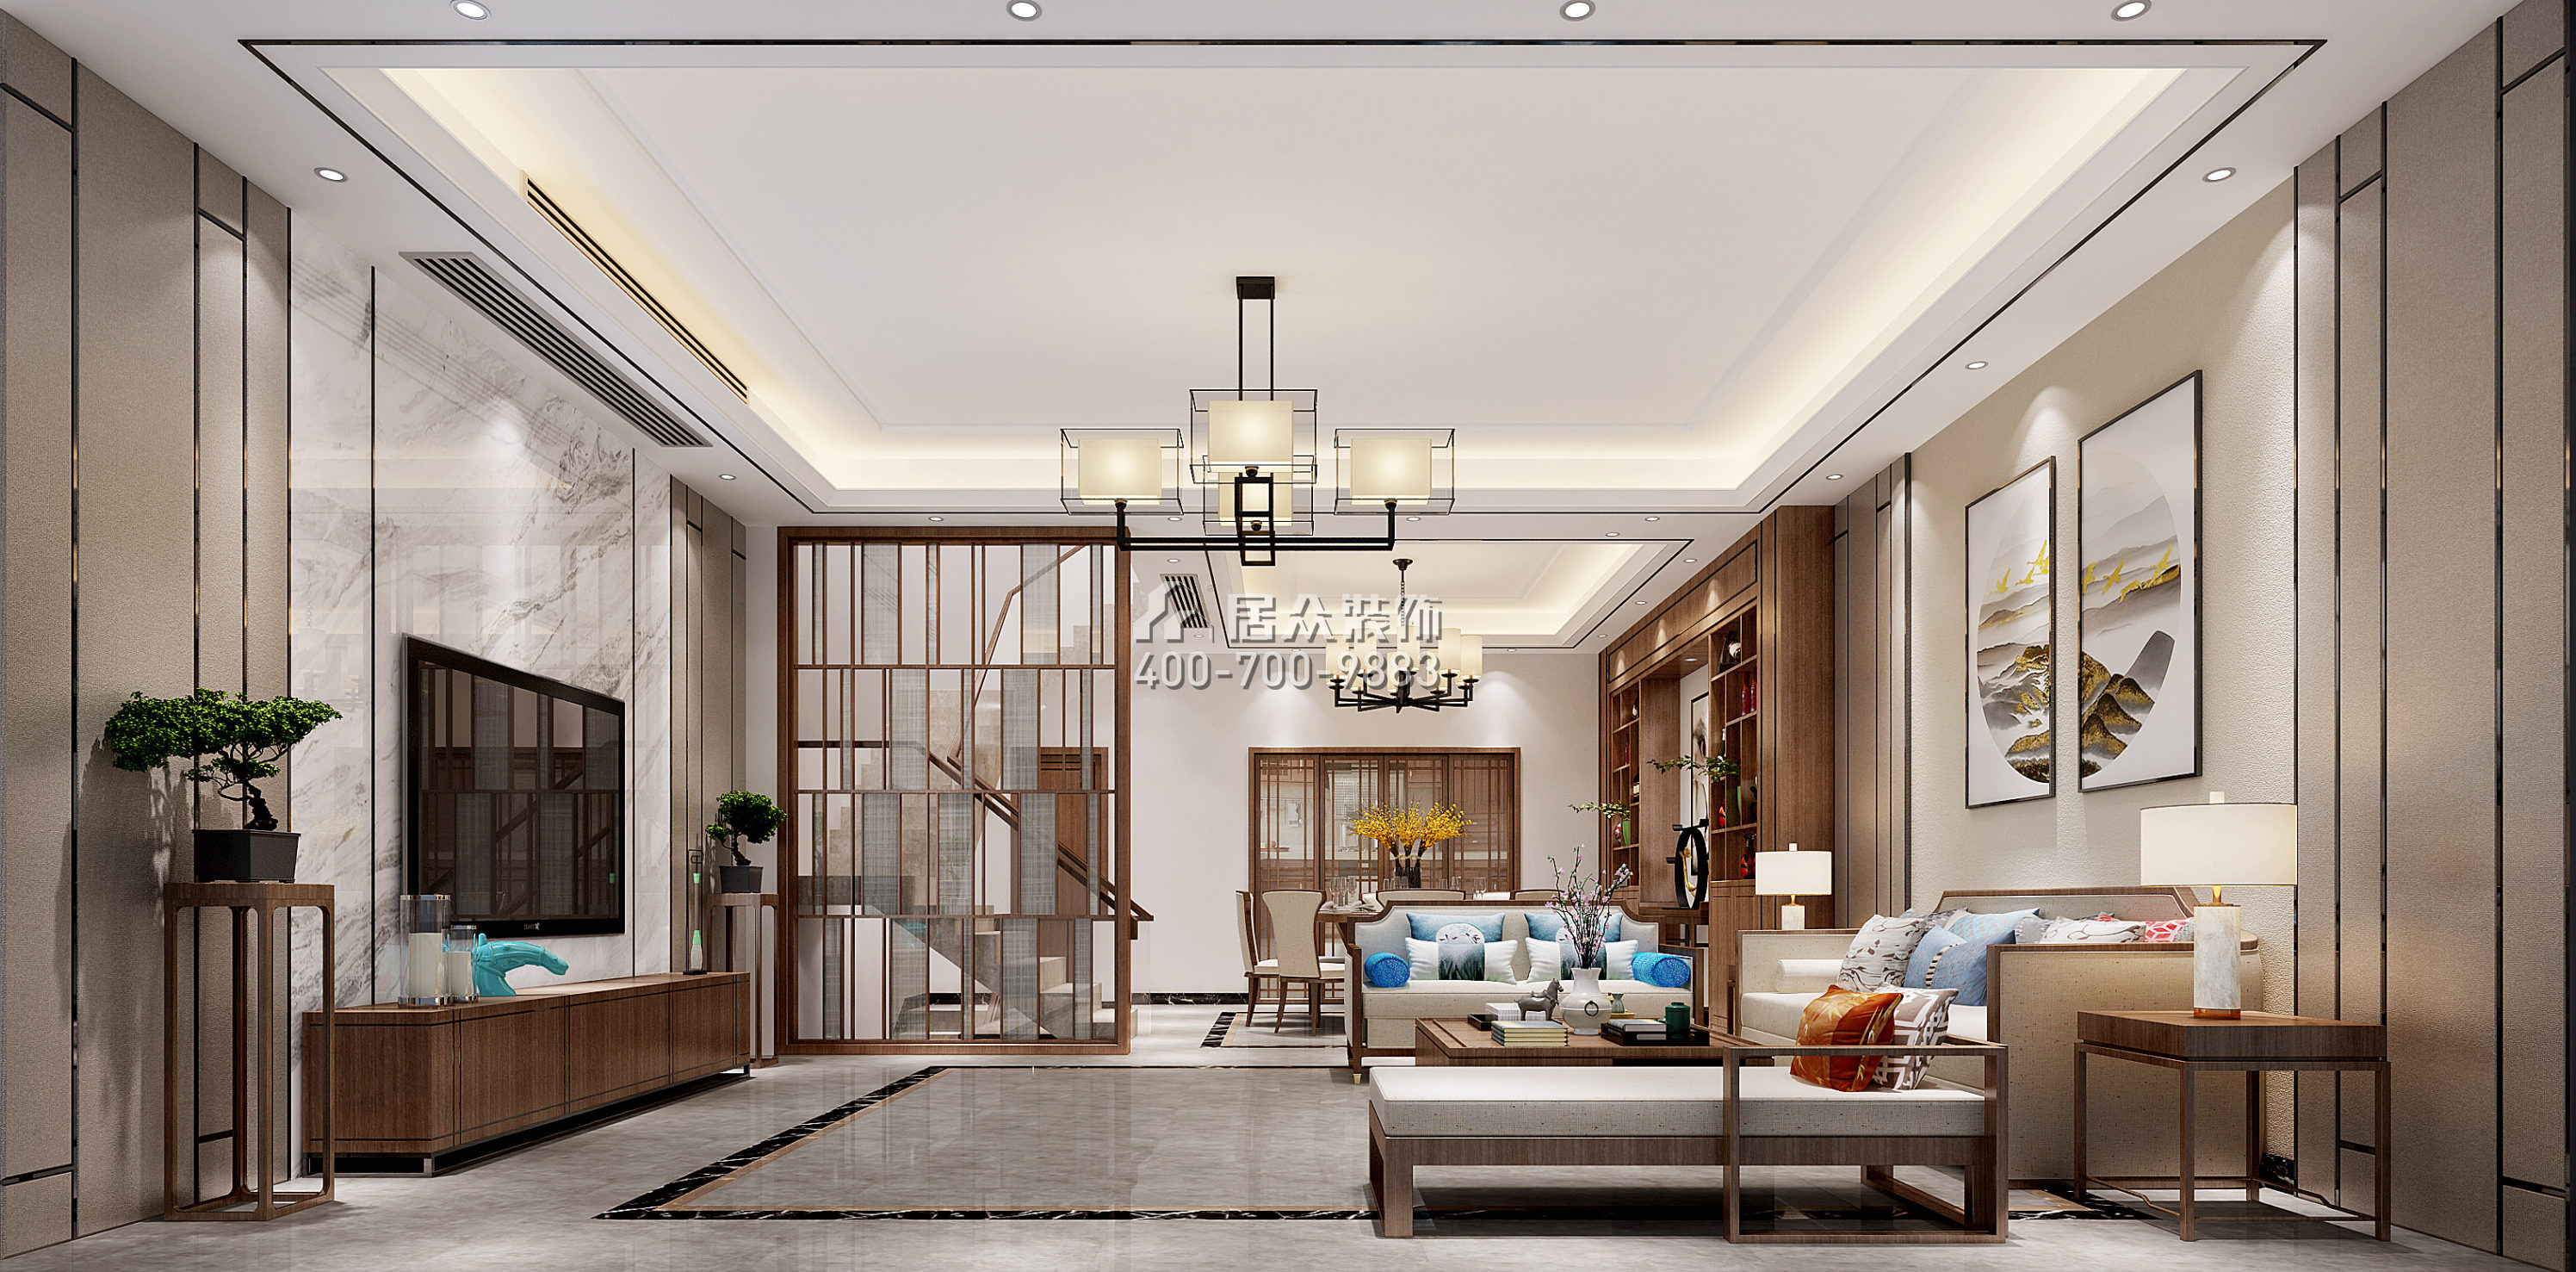 万科棠樾203平方米中式风格别墅户型客厅装修效果图